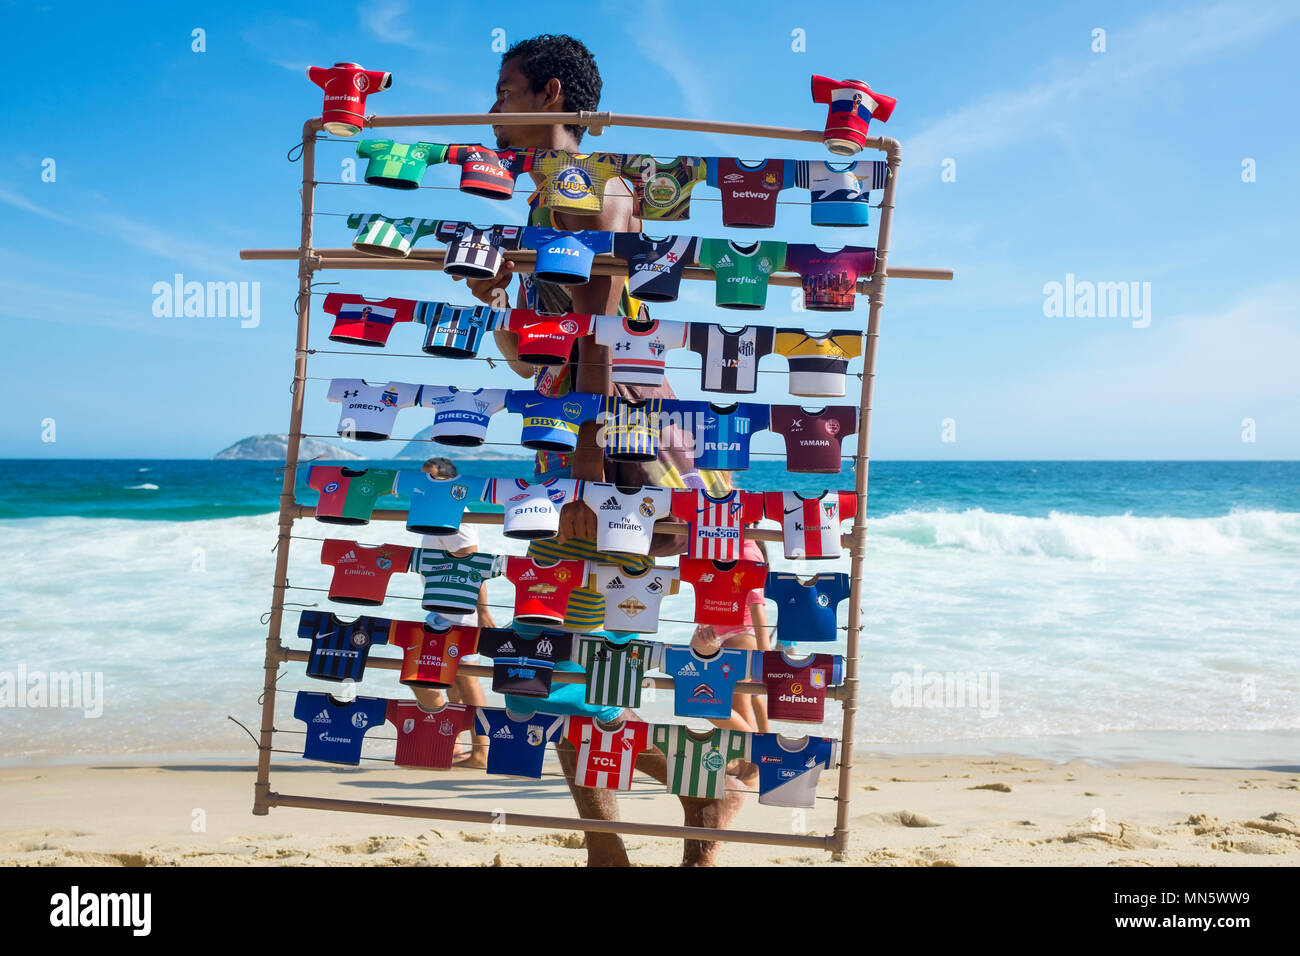 RIO DE JANEIRO - Februar 10, 2017: Ein brasilianischer Hersteller verkaufte Soccer Team Jersey souvenir trinken Kulis Spaziergänge am Strand von Ipanema mit seinem Display Rack Stockfoto